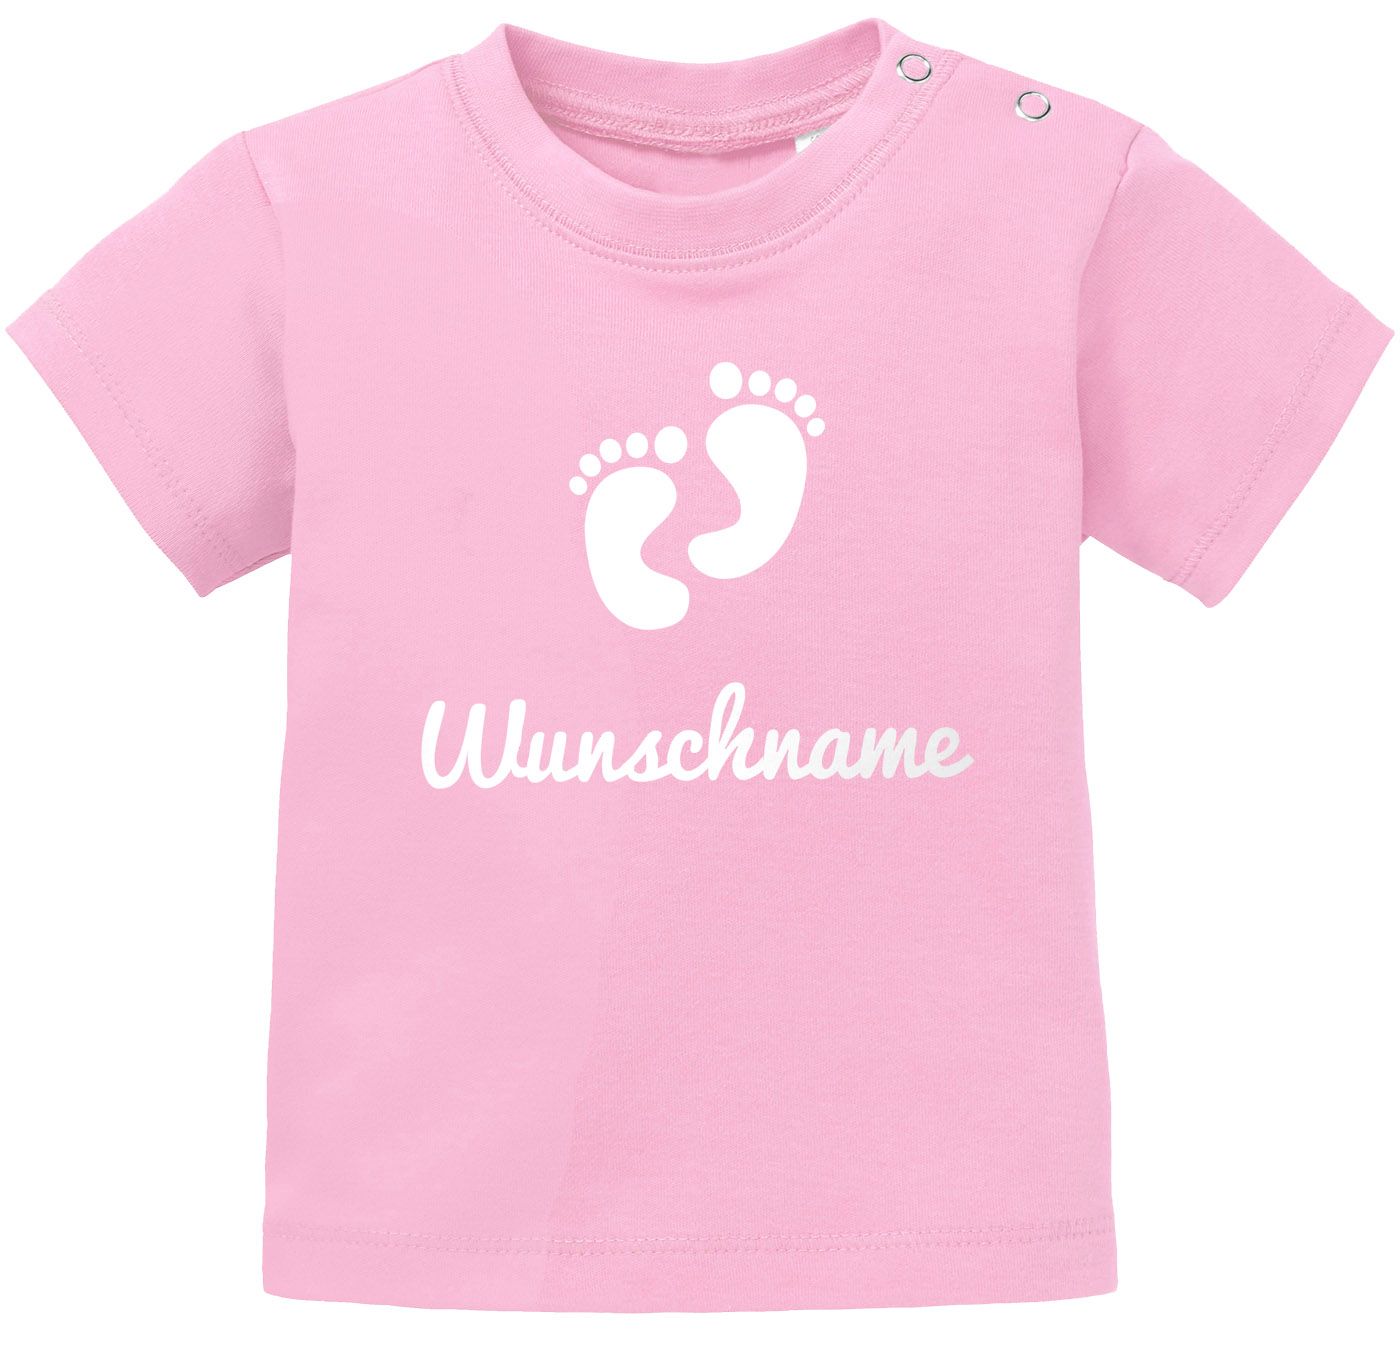 Baby T-Shirt personalisierbar mit Namen Babyfüßchen Wunschname personalisierte Geschenke Geburt Junge Mädchen kurzarm SpecialMe®